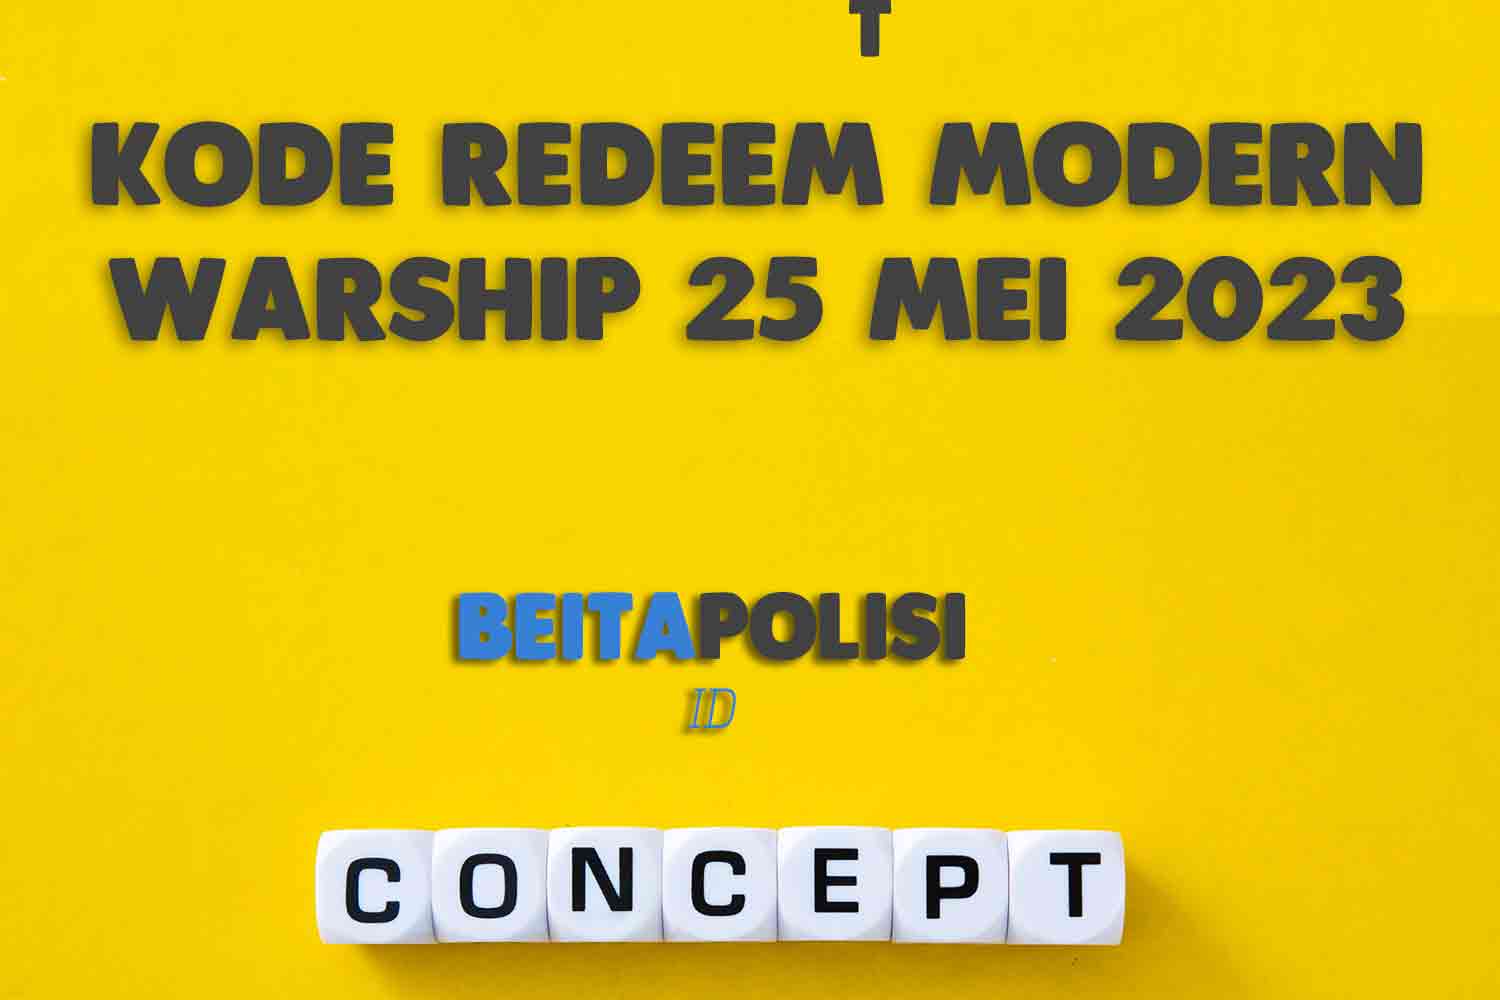 Kode Redeem Modern Warship 25 Mei 2023 Yang Masih Aktif